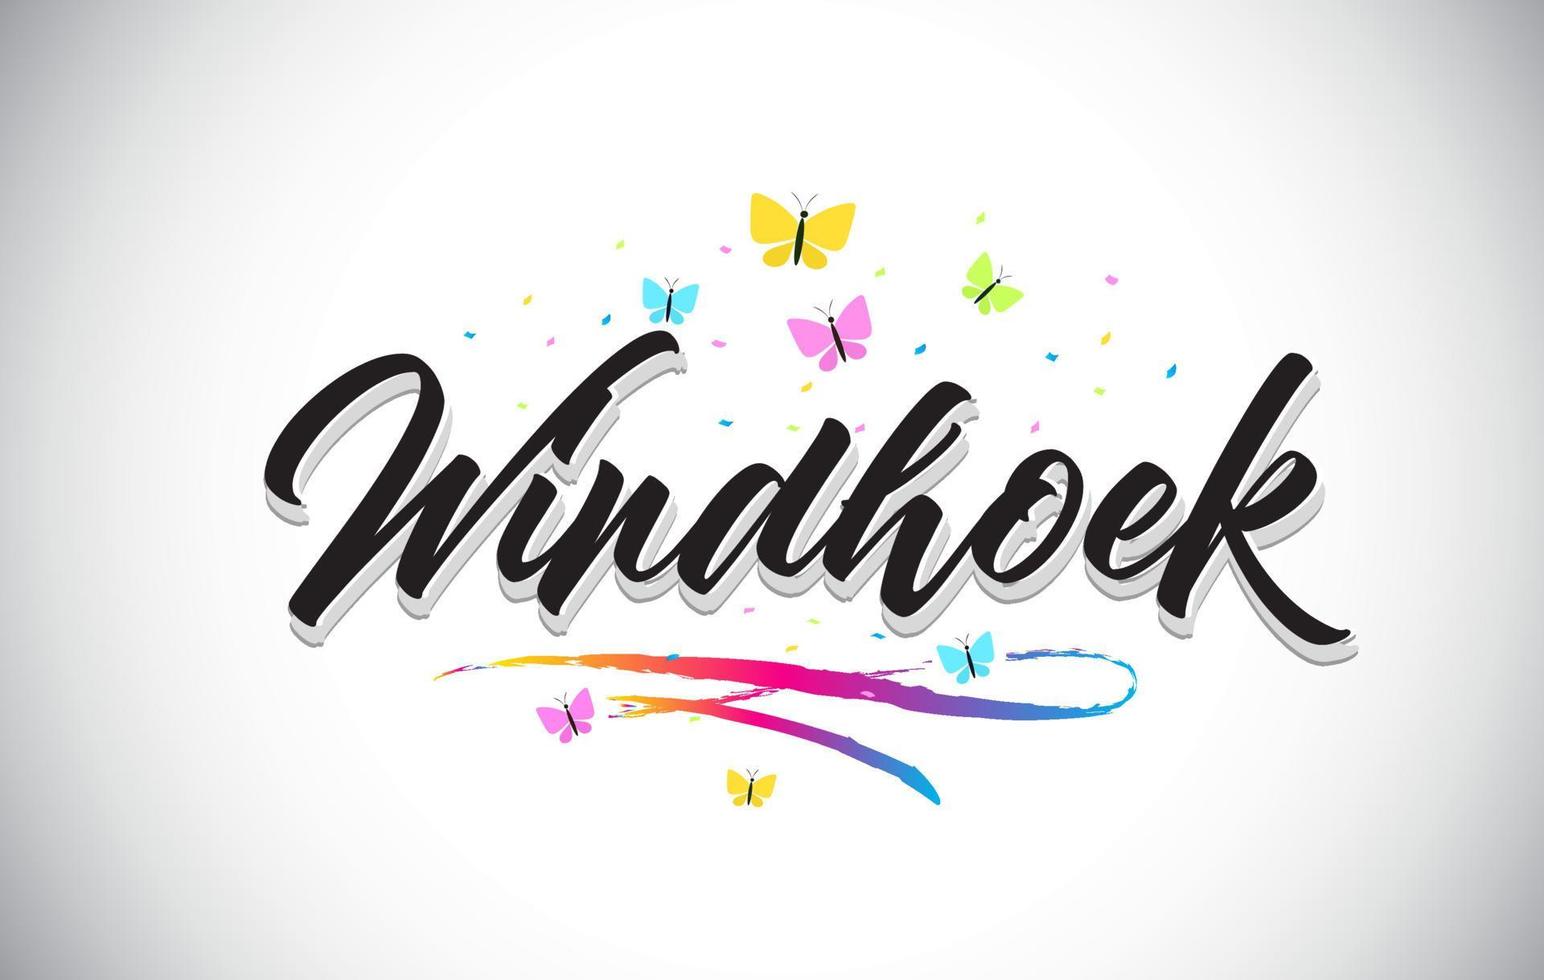 testo di parola vettoriale scritto a mano windhoek con farfalle e swoosh colorato.